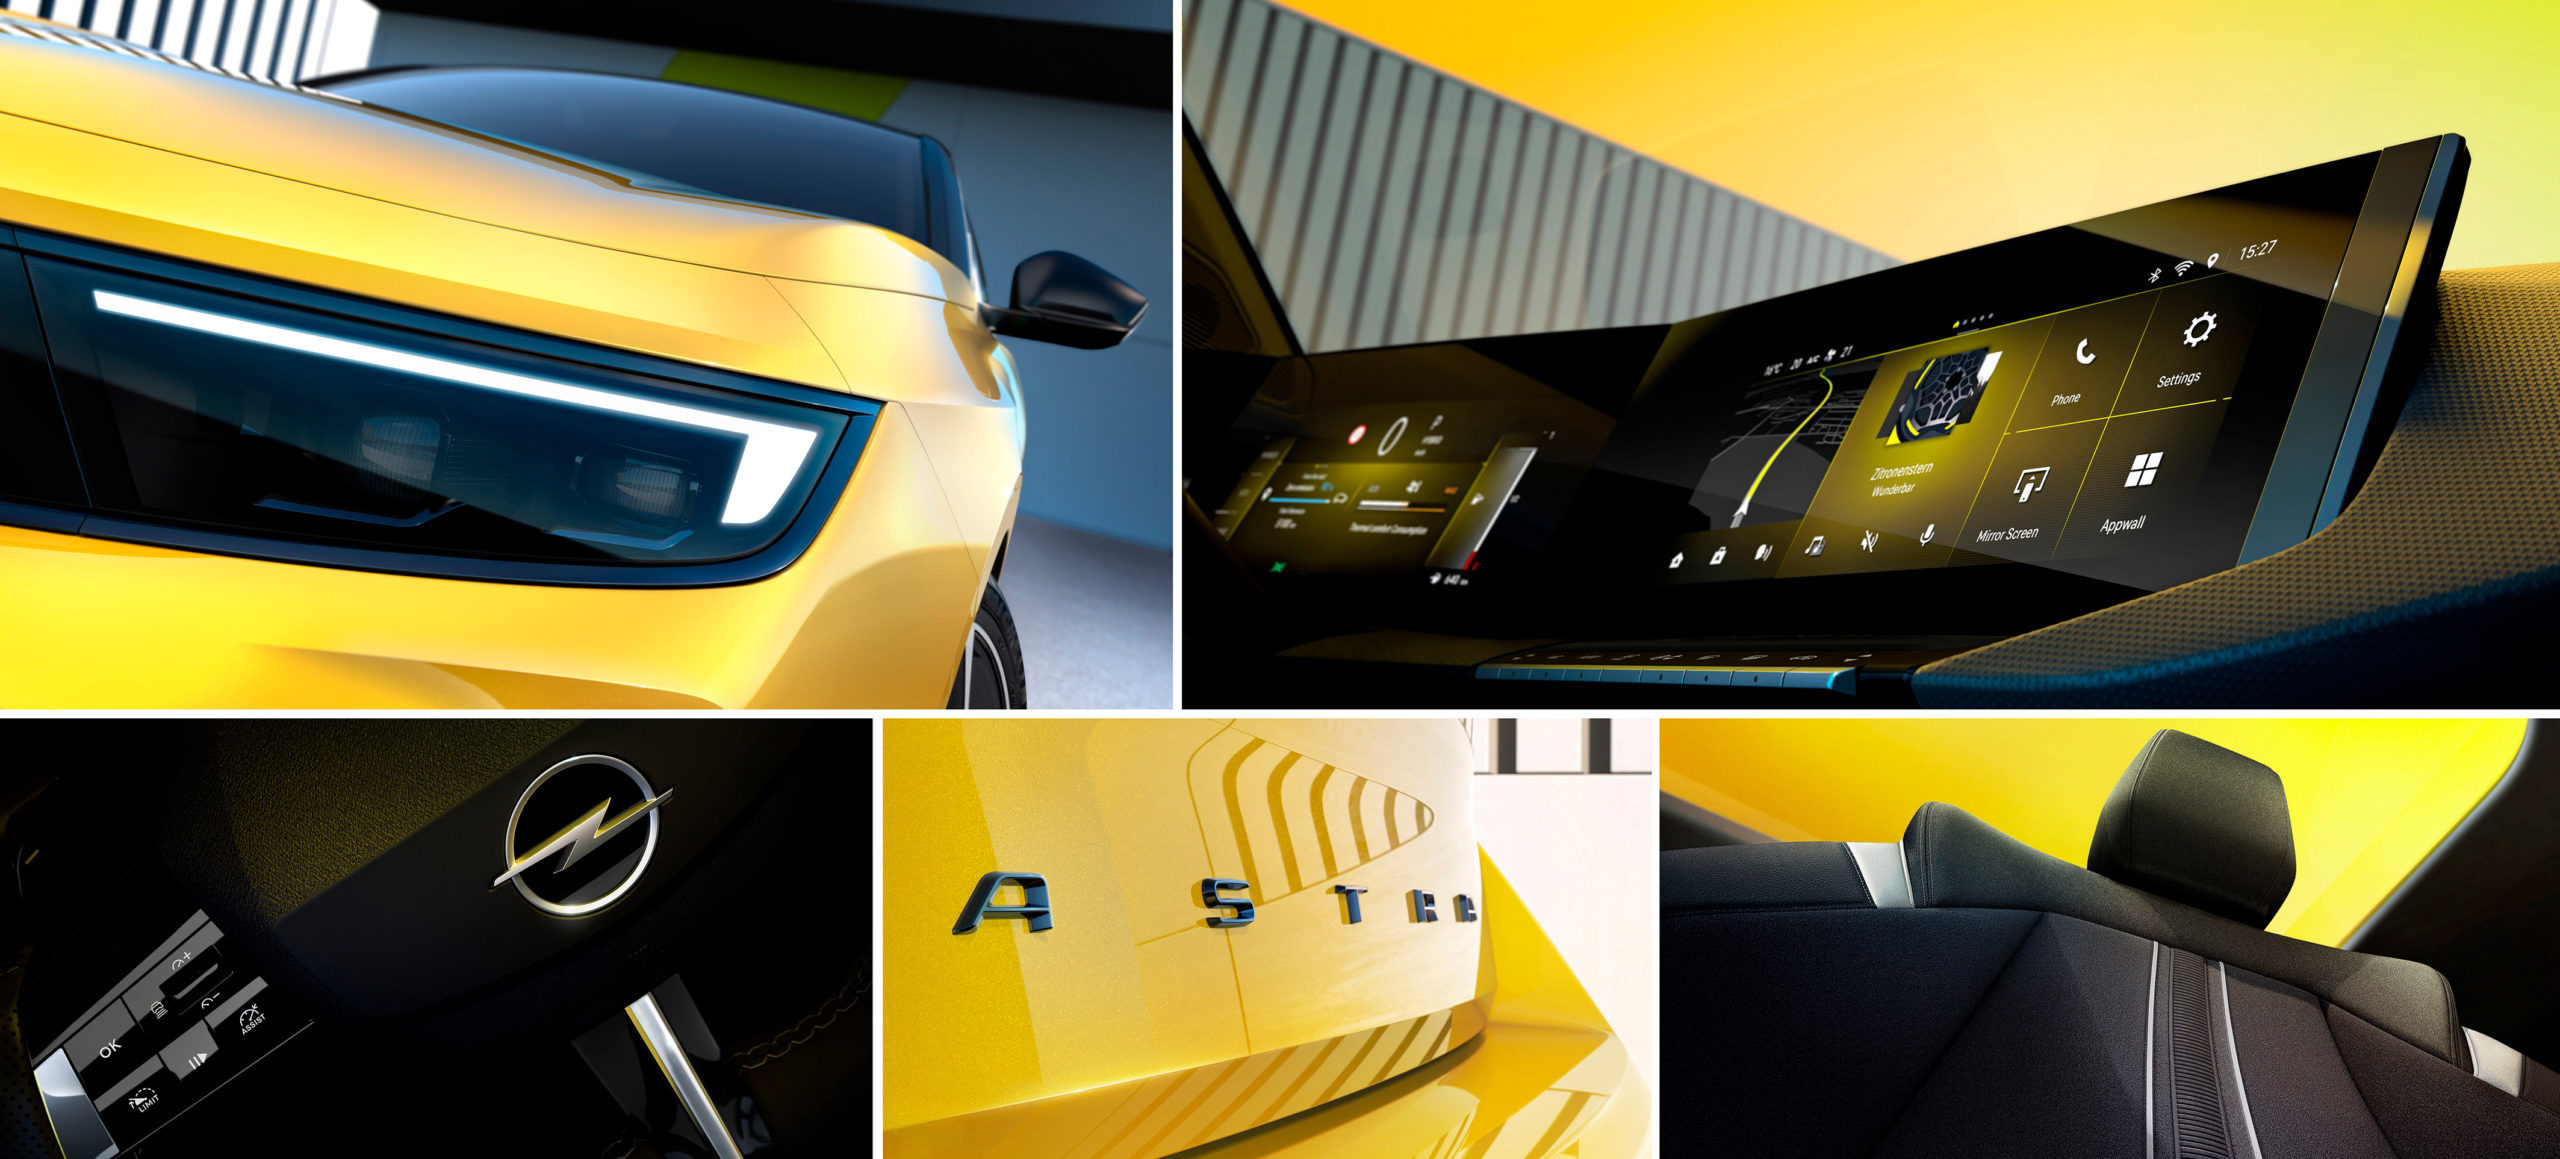 Nuevo Opel Astra, estos son los primeros detalles